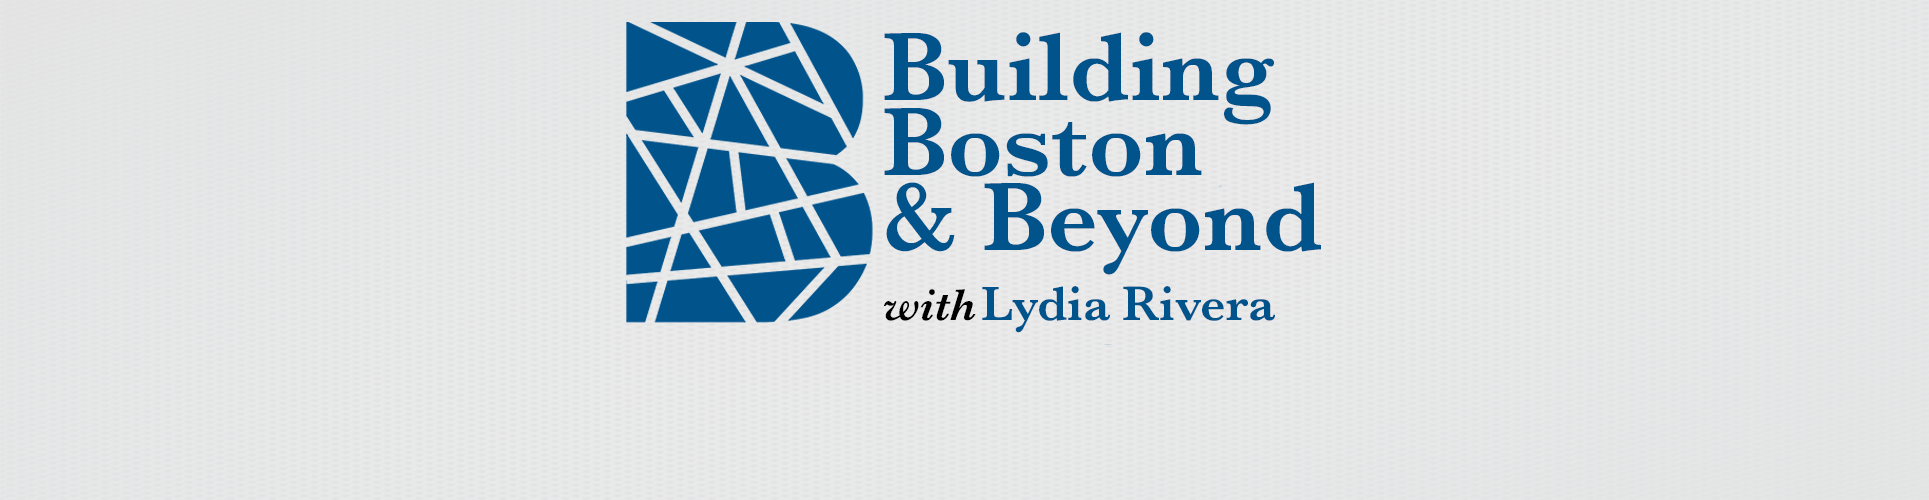 Building Boston & Beyond